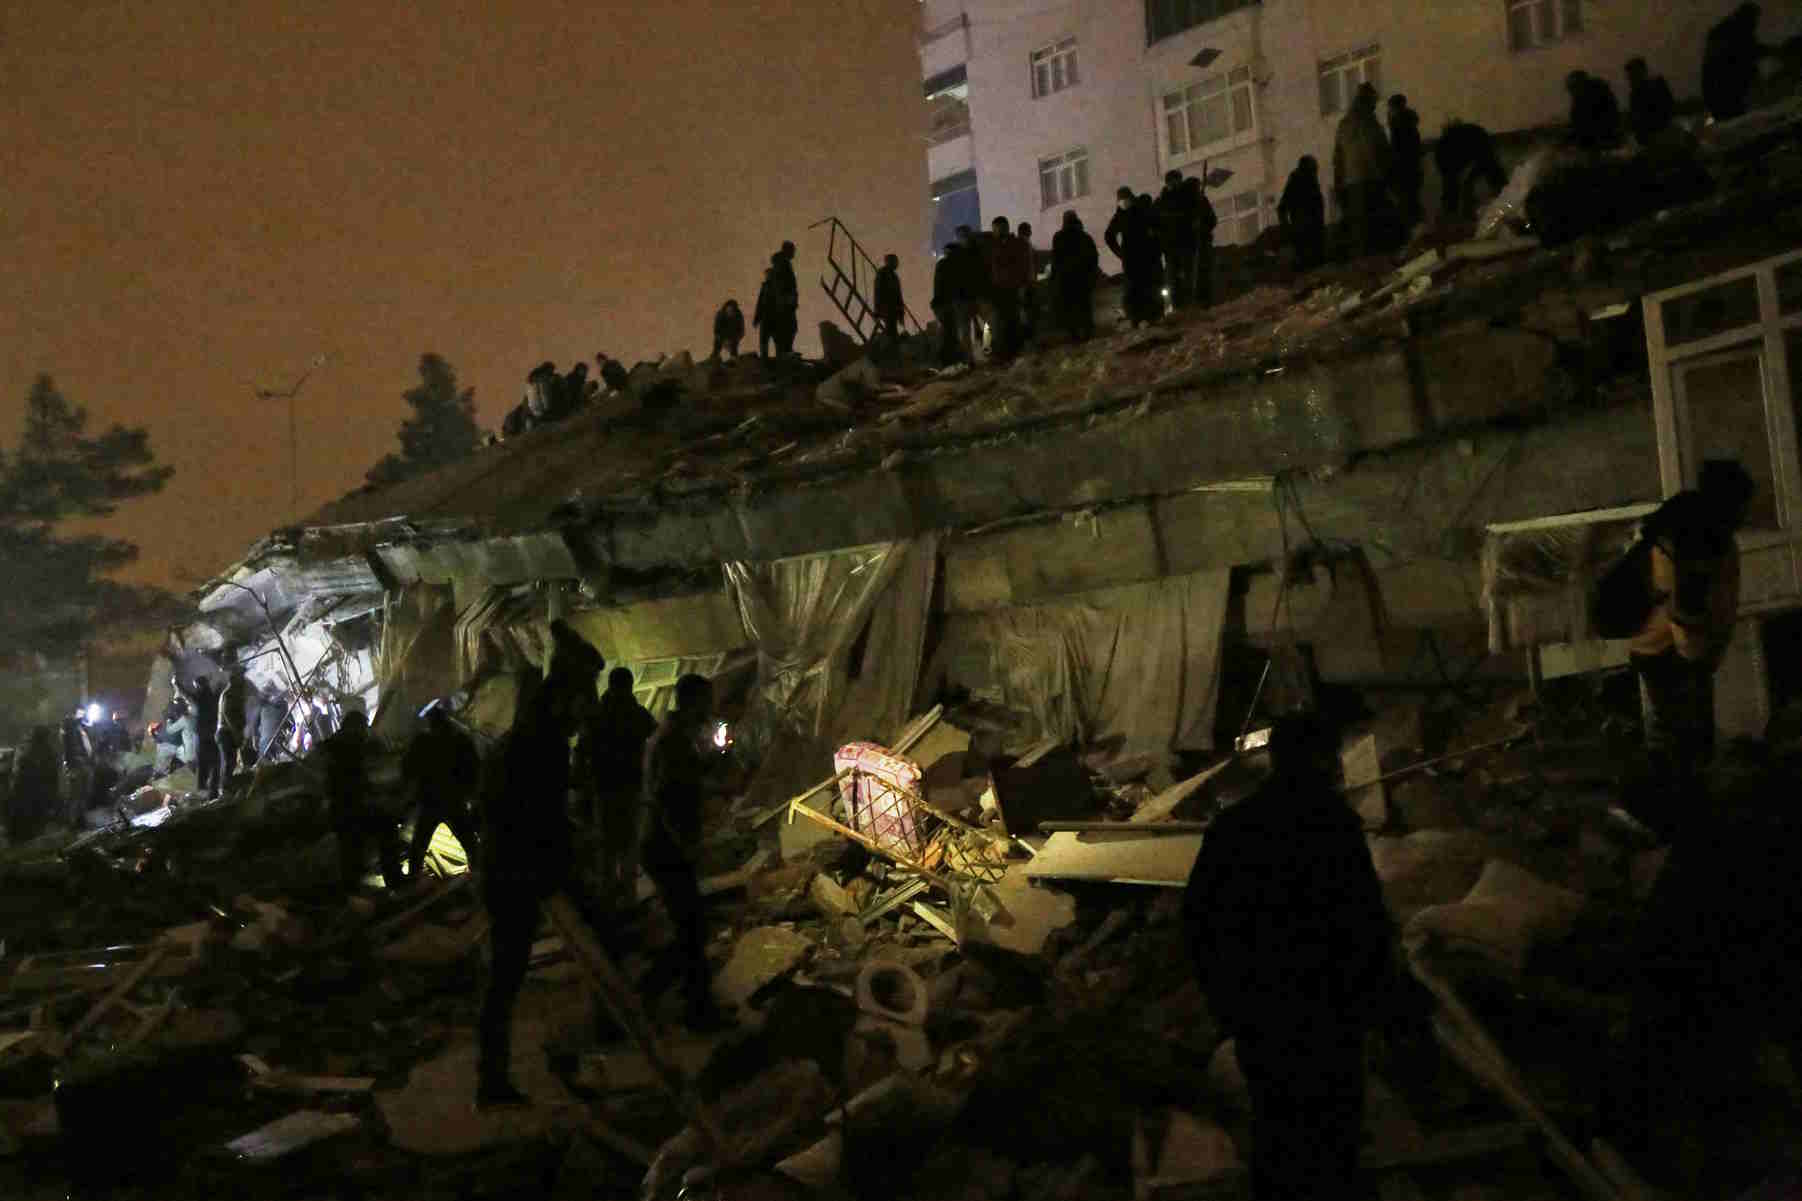 Σεισμός στην Τουρκία: «Είχε ισχύ όσο 130 ατομικές βόμβες» λέει Τούρκος σεισμολόγος για το φονικό χτύπημα του Εγκέλαδου